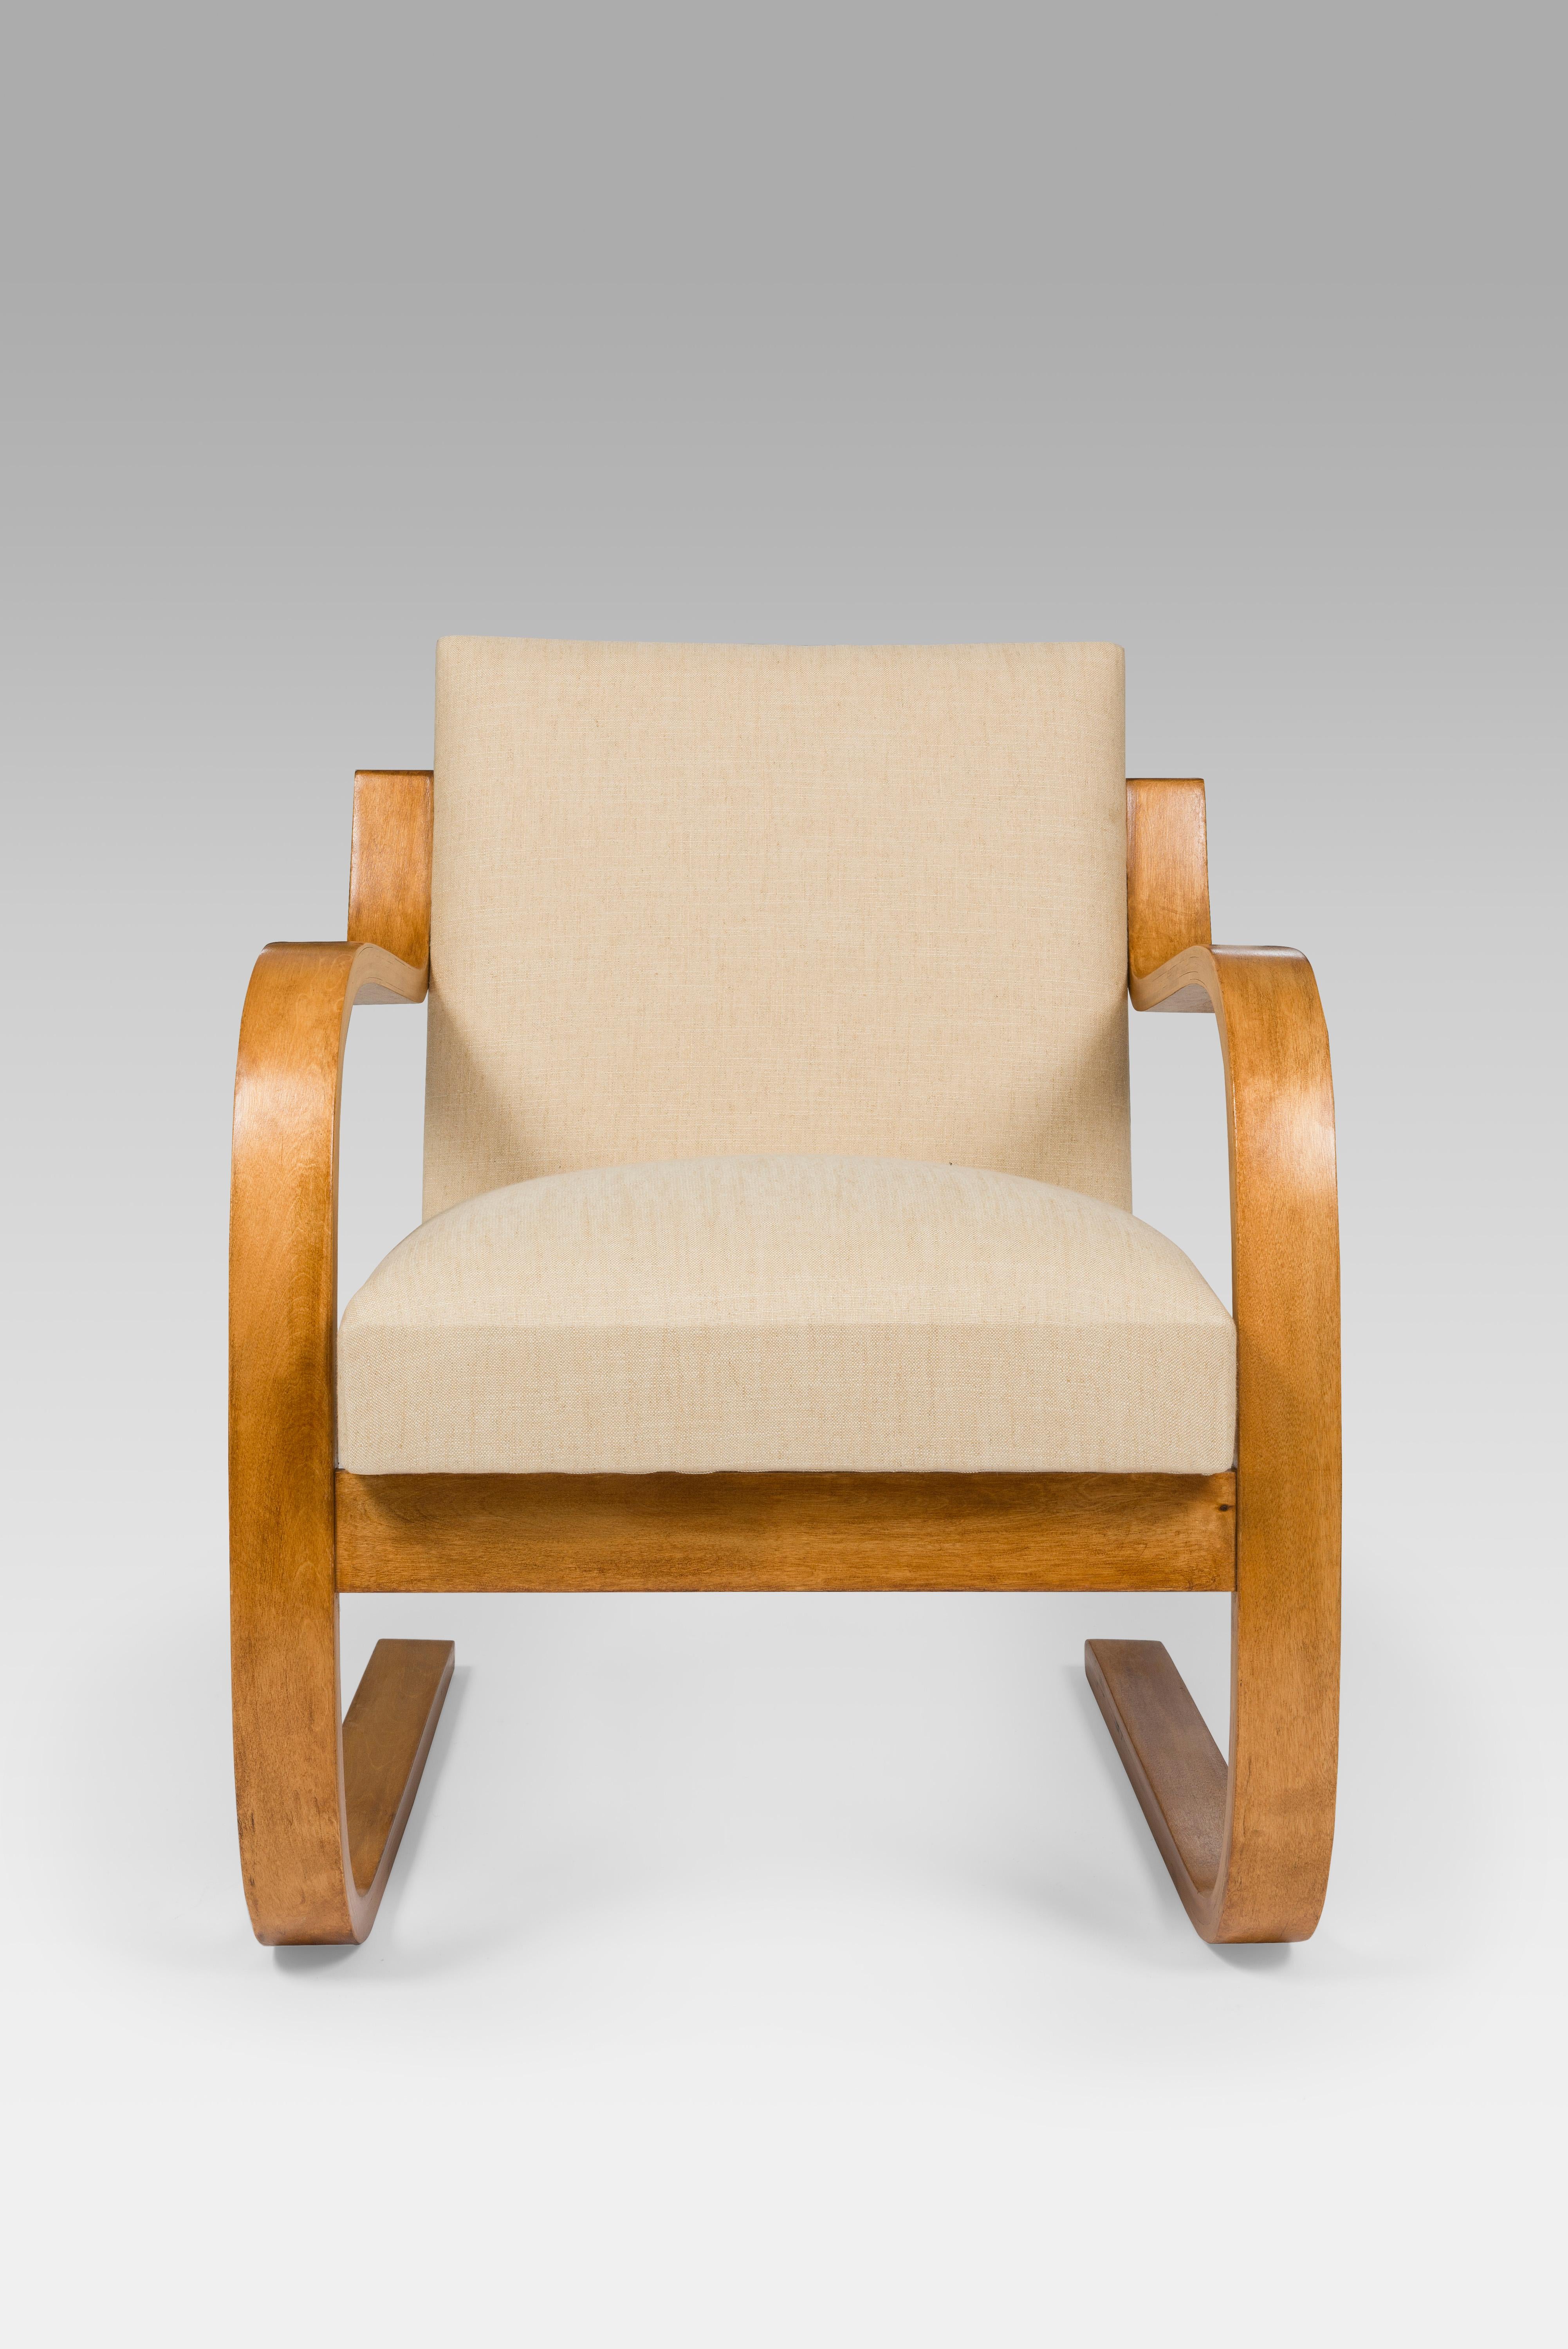 Originaler Alvar Aalto-Sessel Modell 402 aus den 1930er Jahren mit neu gepolstertem cremefarbenem Stoff. 

Eine von Aaltos bemerkenswerten Kreationen ist der 1930 eingeführte Sessel 